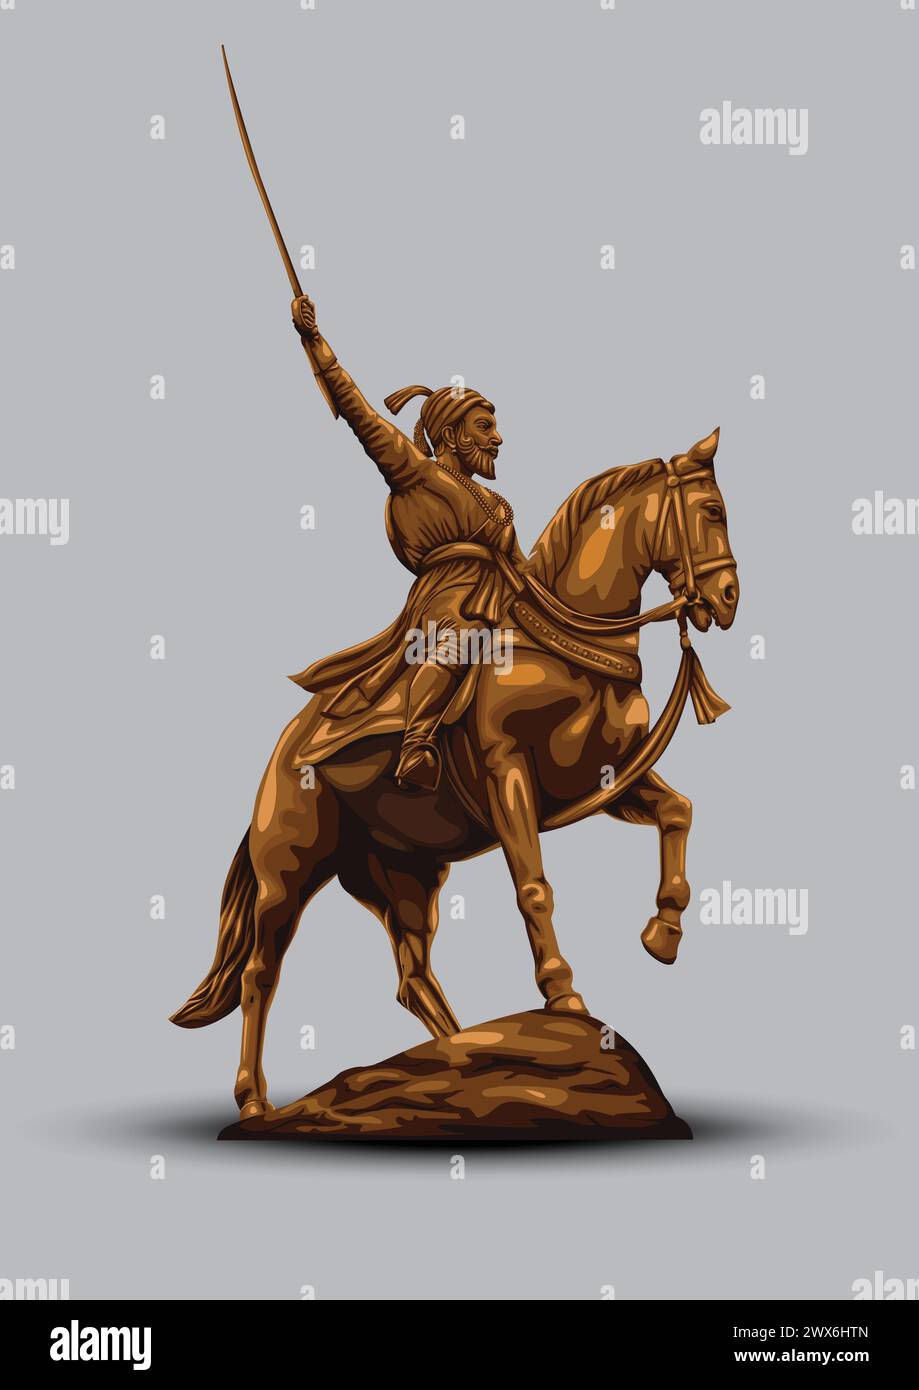 La statua di Chhatrapati Shivaji Maharaj era un re guerriero indiano. illustrazione vettoriale Illustrazione Vettoriale